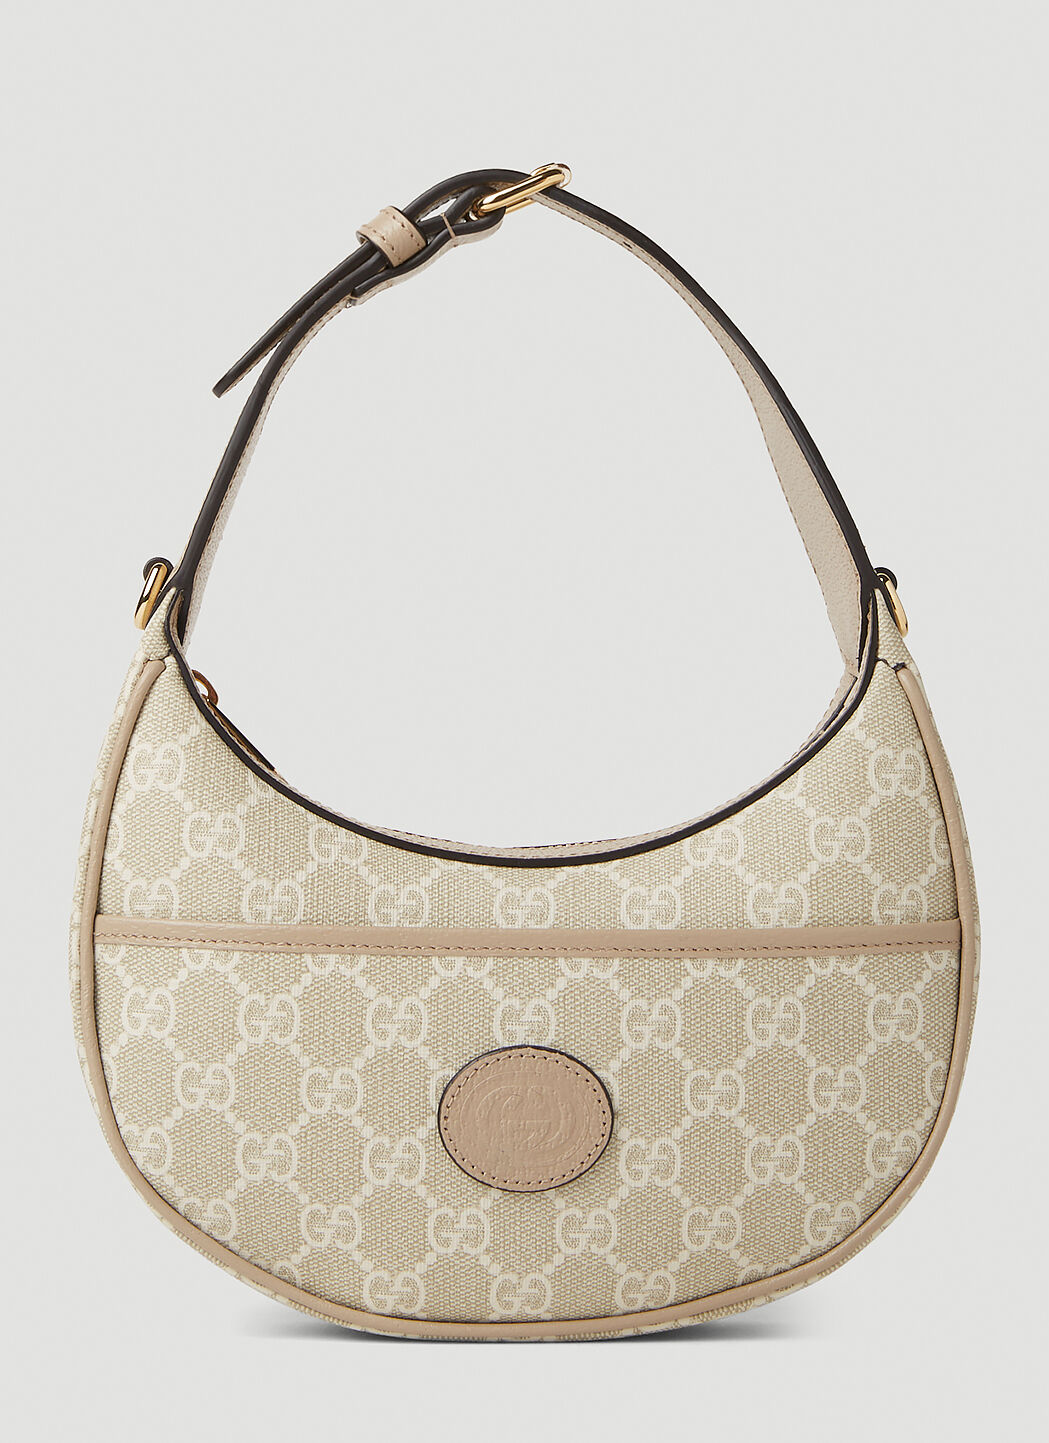 Gucci GG Retro Mini Handbag Brown guc0251246